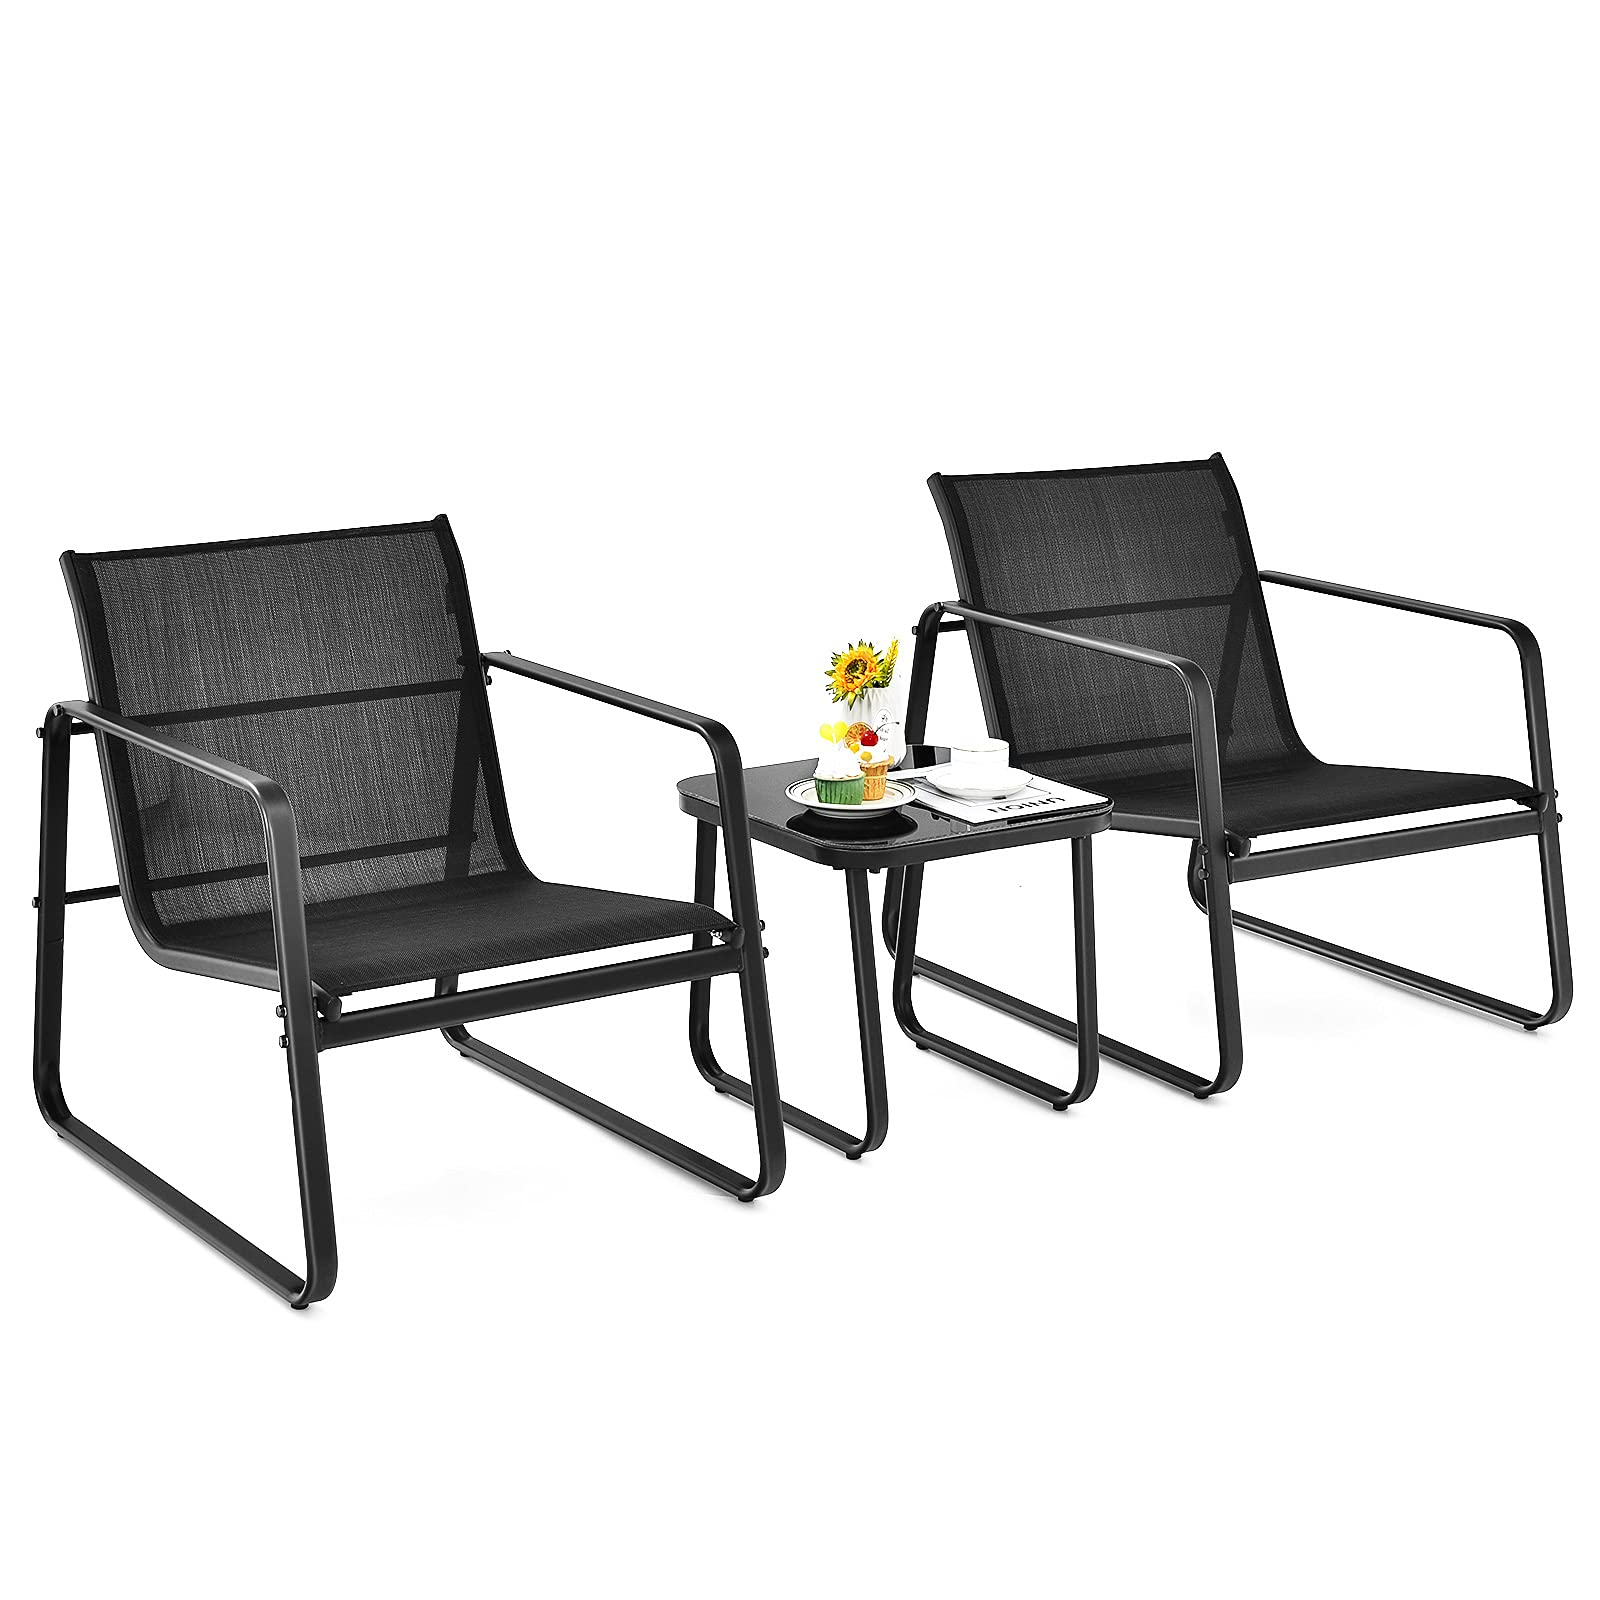 Giantex 3 Pieces Patio Furniture Set, Outdoor Bistro Set with Rustproof Steel Frame